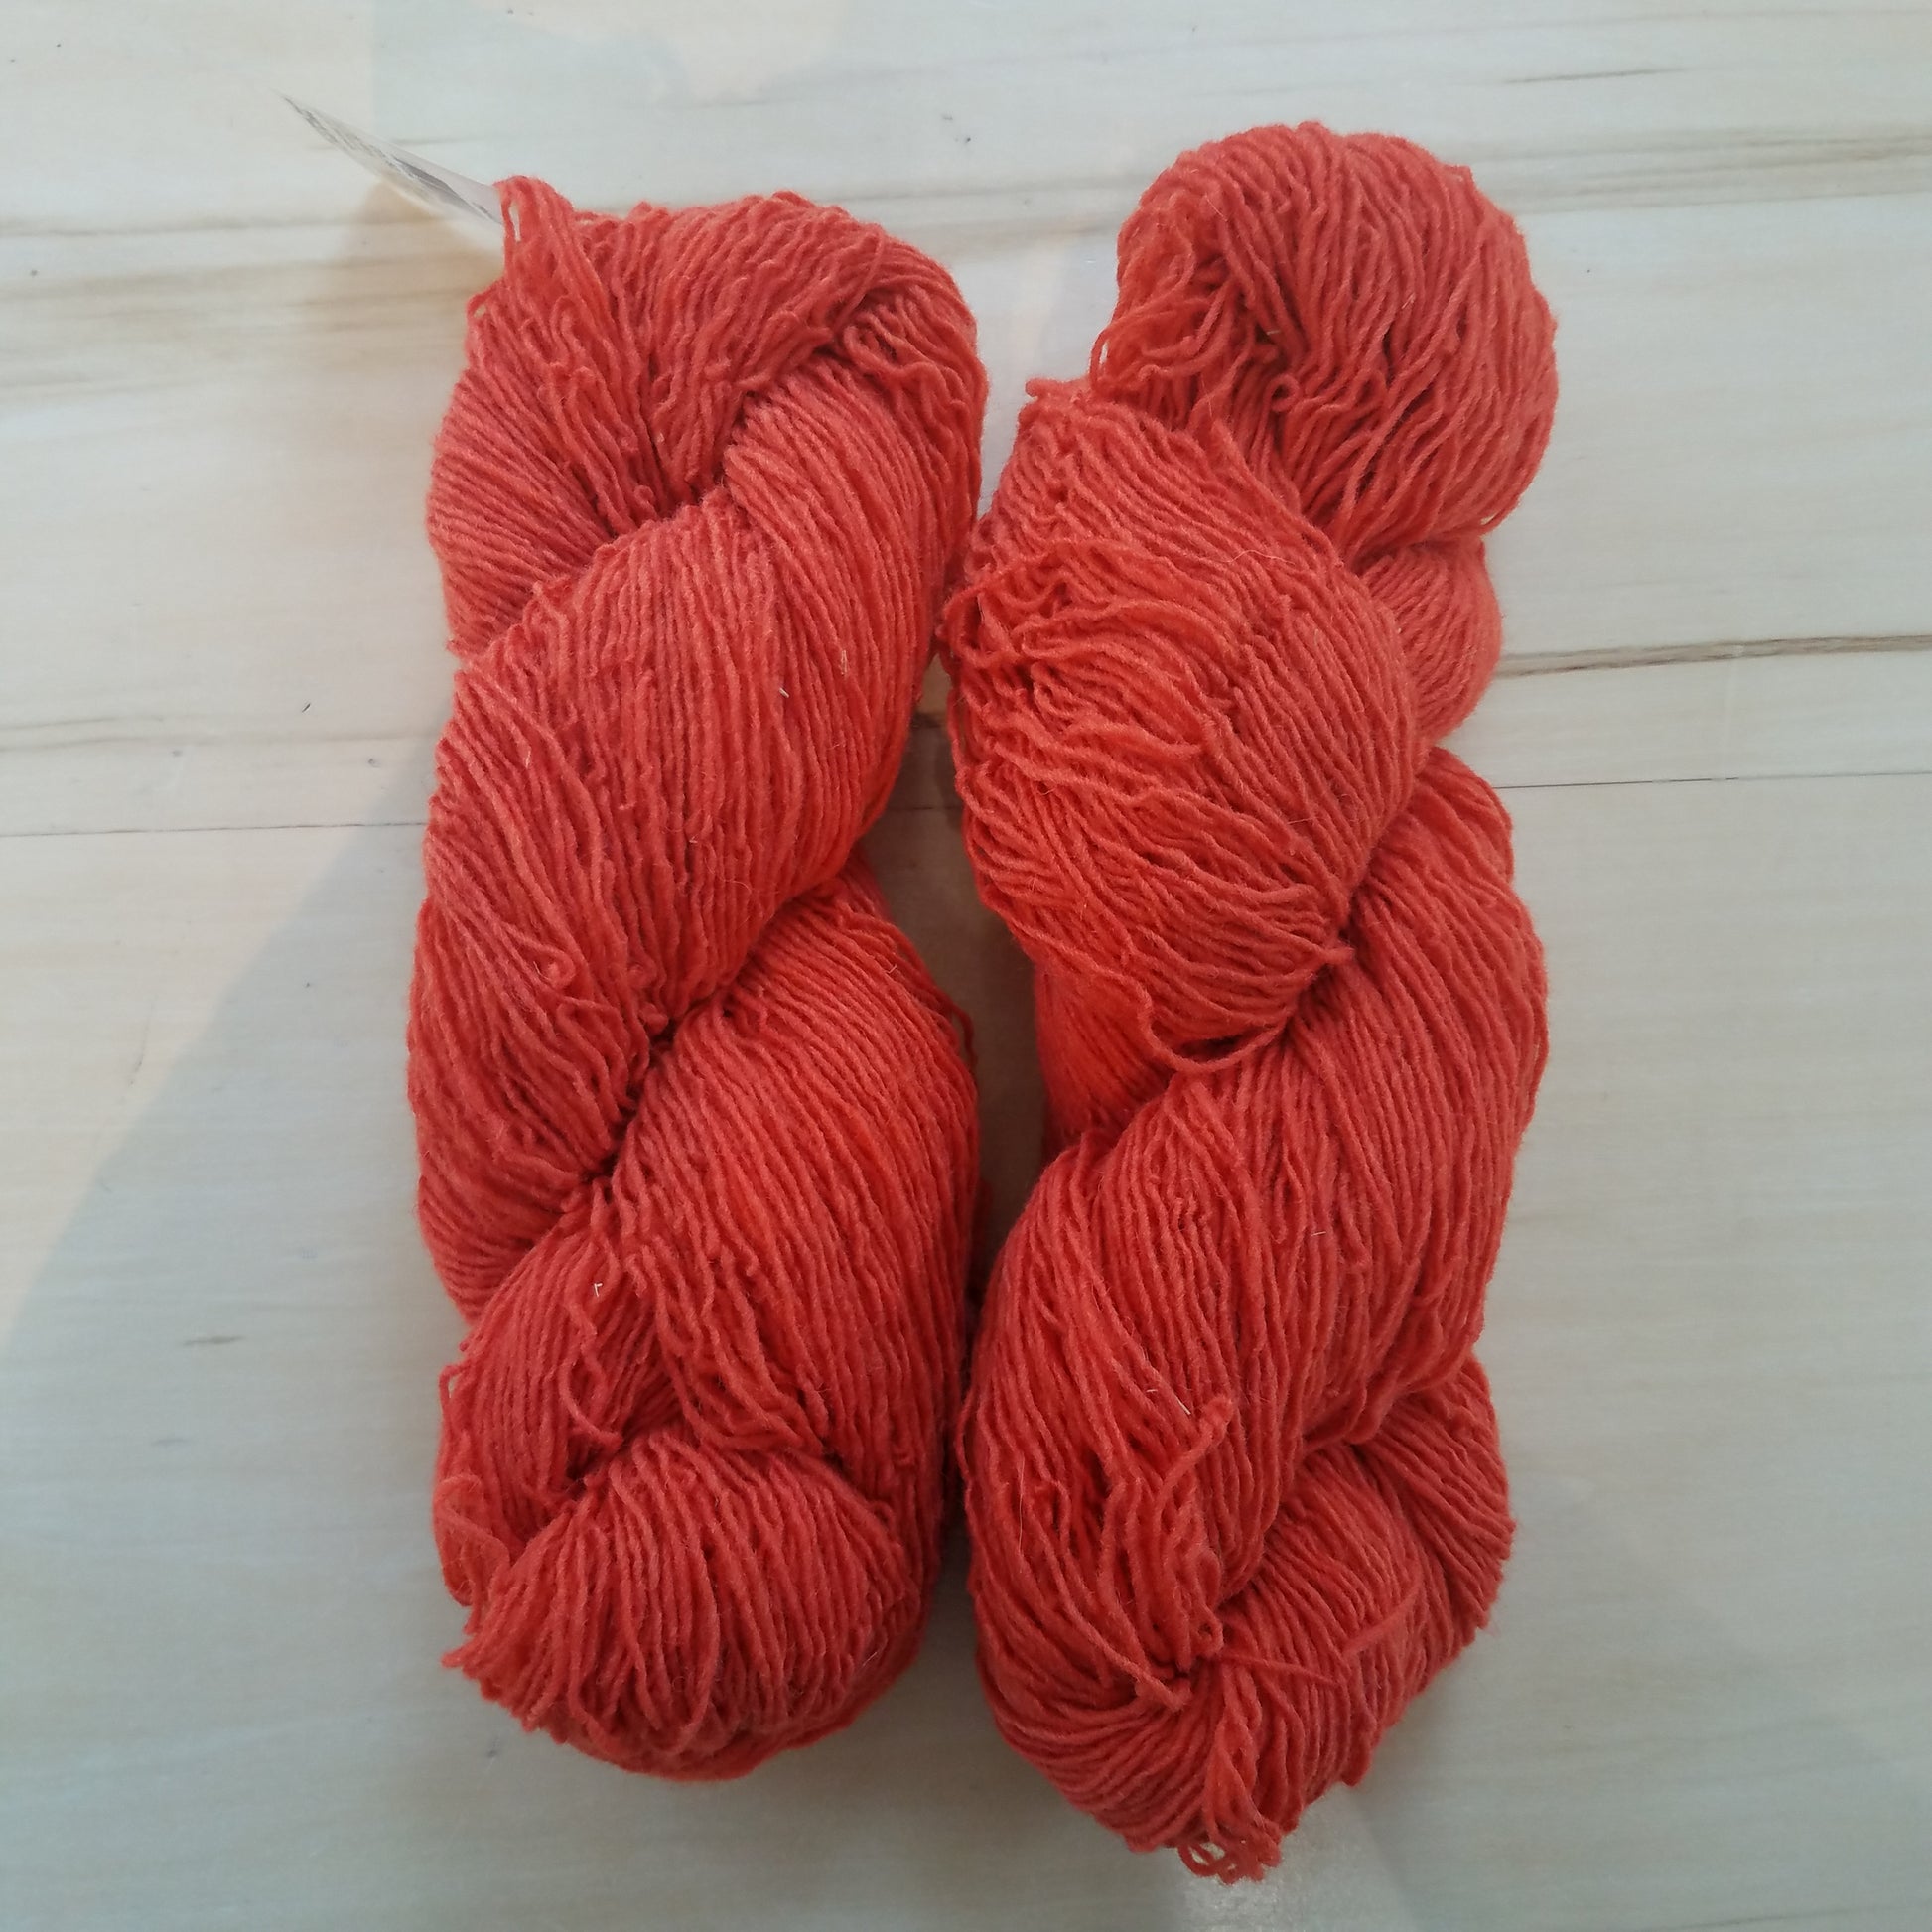 Briggs & Little Sport: Orange - Maine Yarn & Fiber Supply